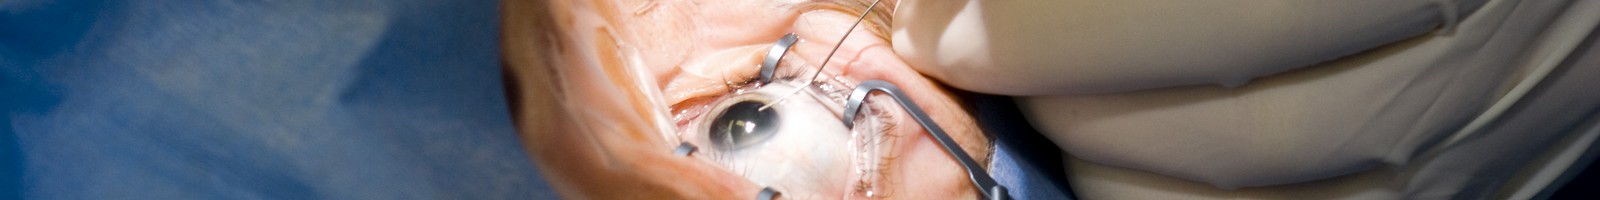 Bientôt, plus besoin de chirurgie pour soigner la cataracte ? 